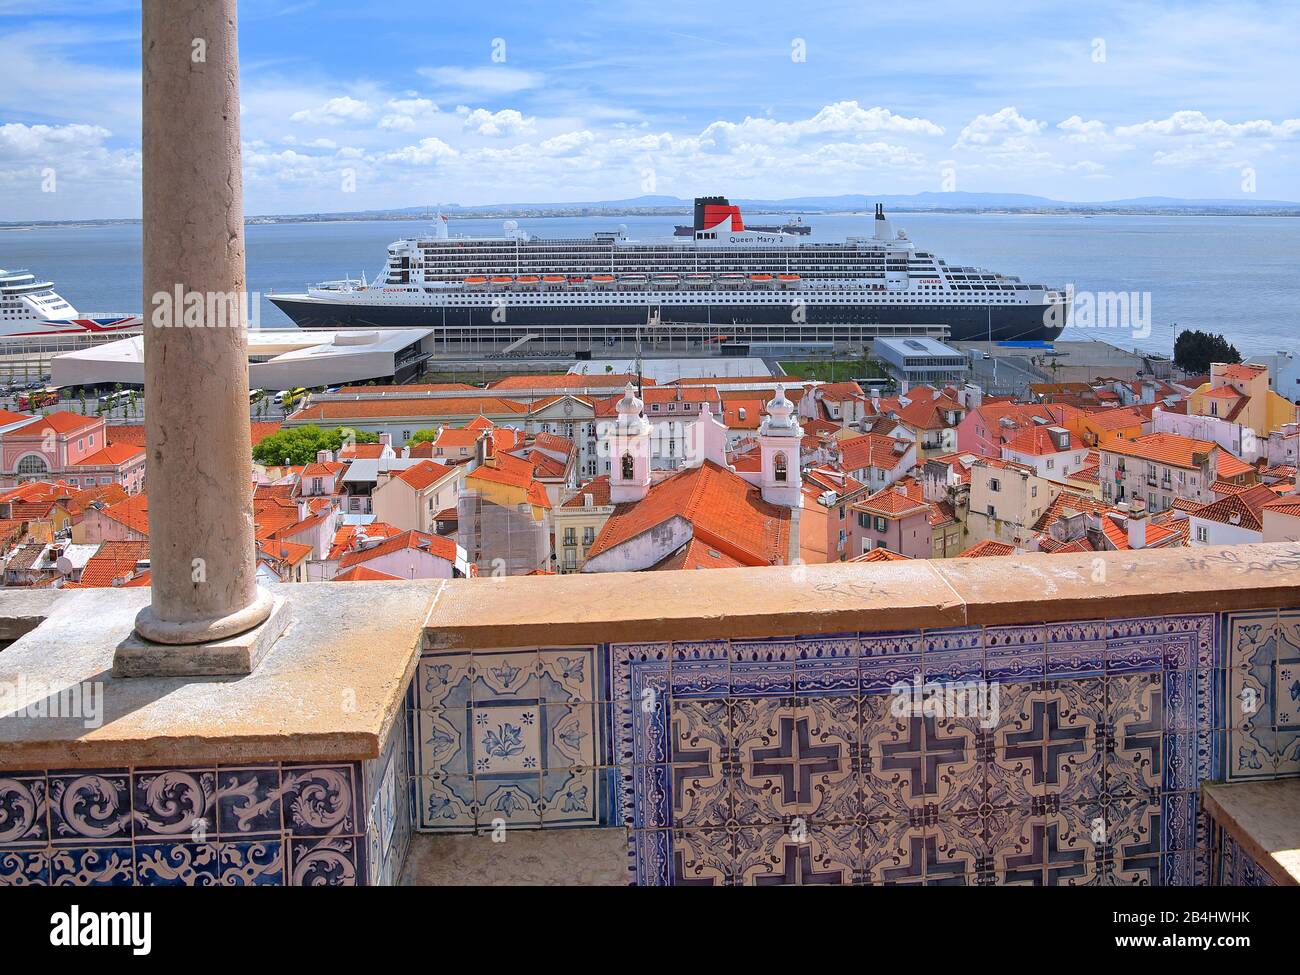 Aussichtspunkt Santa Luzia in der Altstadt mit dem transatlantischen Linienschiff Queen Mary 2 im Hafen am Tejo, Lissabon, Portugal Stockfoto